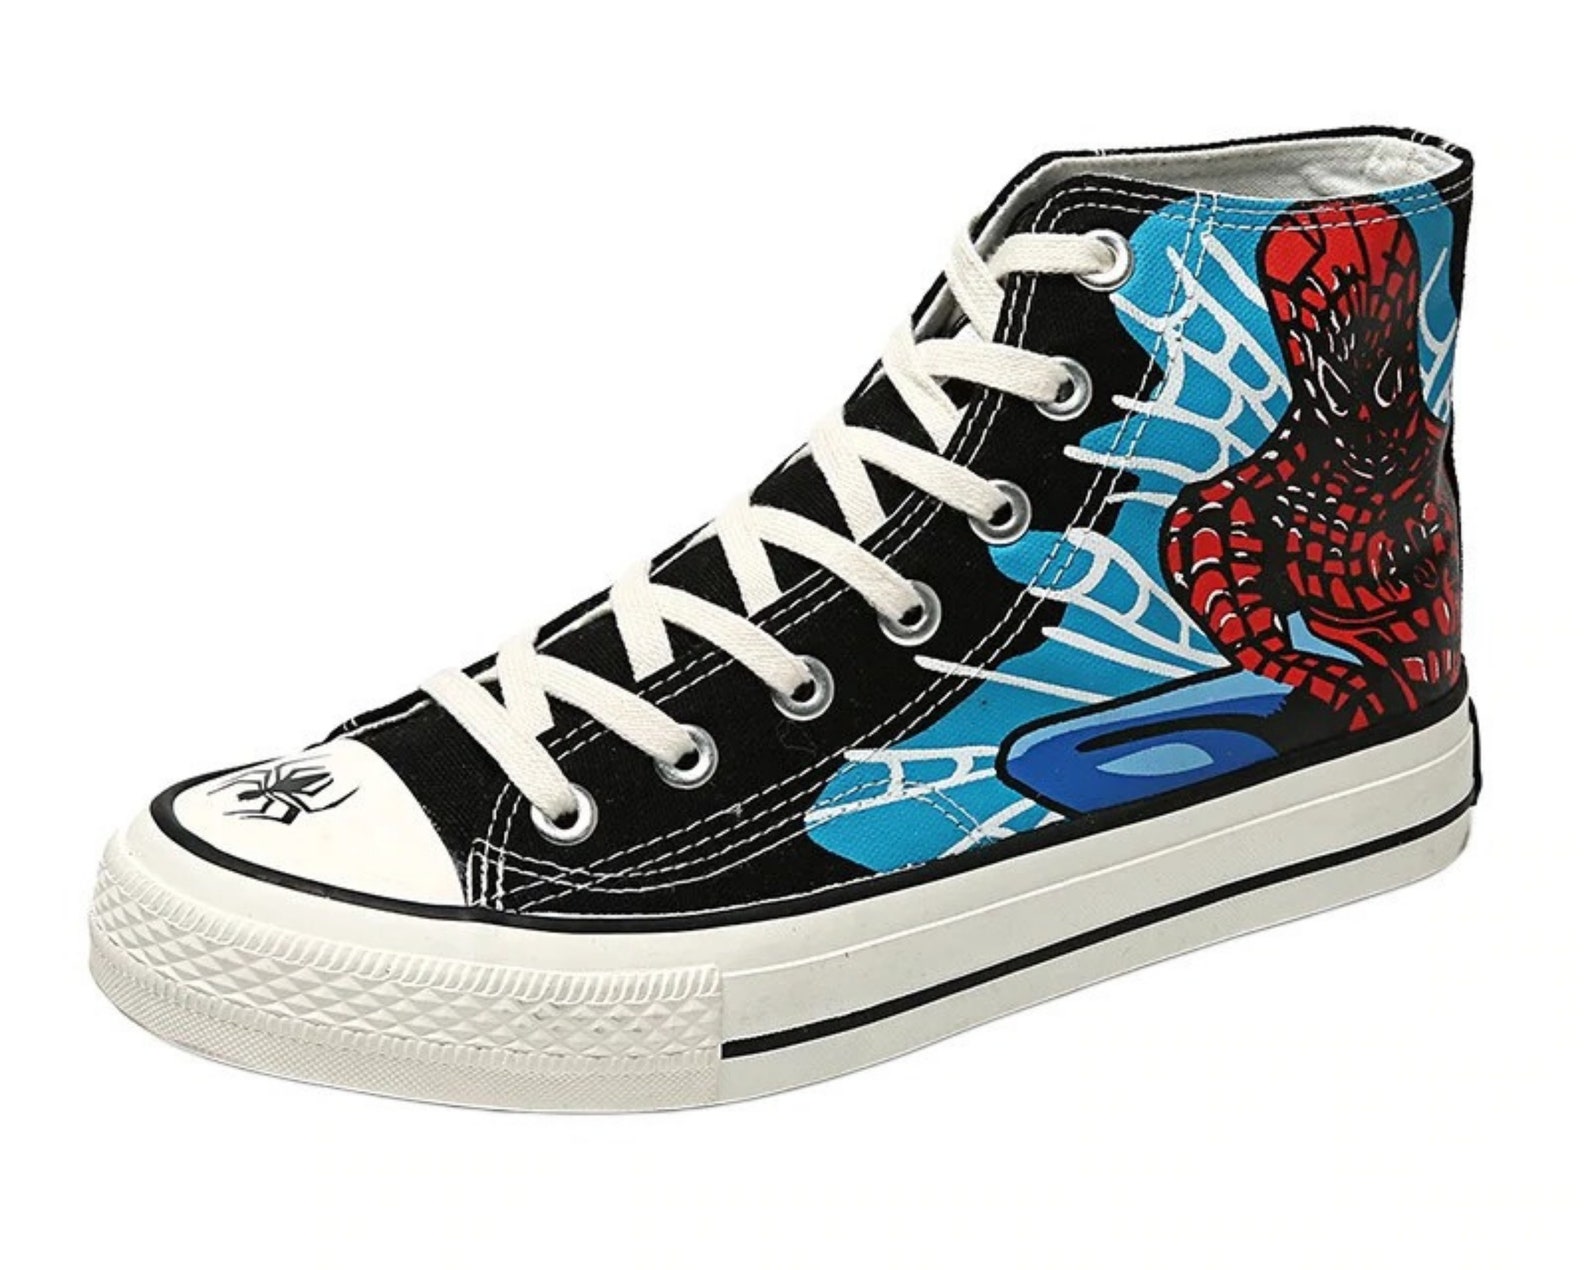 Spiderman Sneakers 4 Designs | Etsy